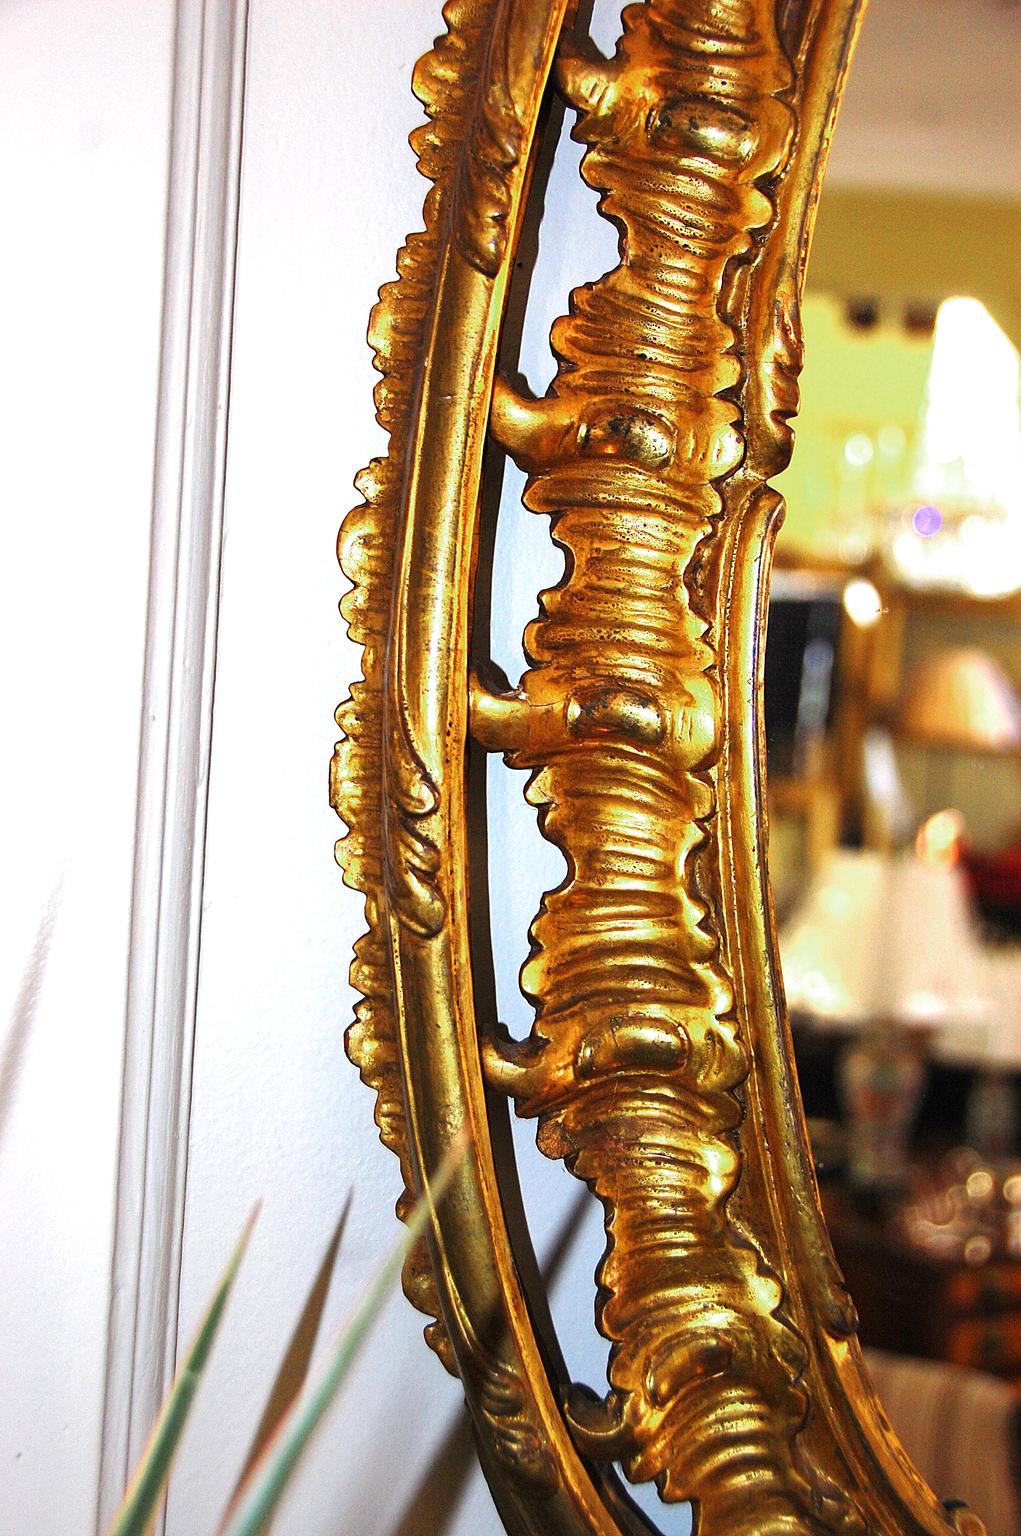 Miroir ovale sculpté à la feuille d'or avec des motifs de vagues et de feuilles, vers 1790, période George III. Cette taille modeste s'adapte bien au-dessus d'une commode, dans un hall d'entrée ou tout autre endroit où une certaine élégance est